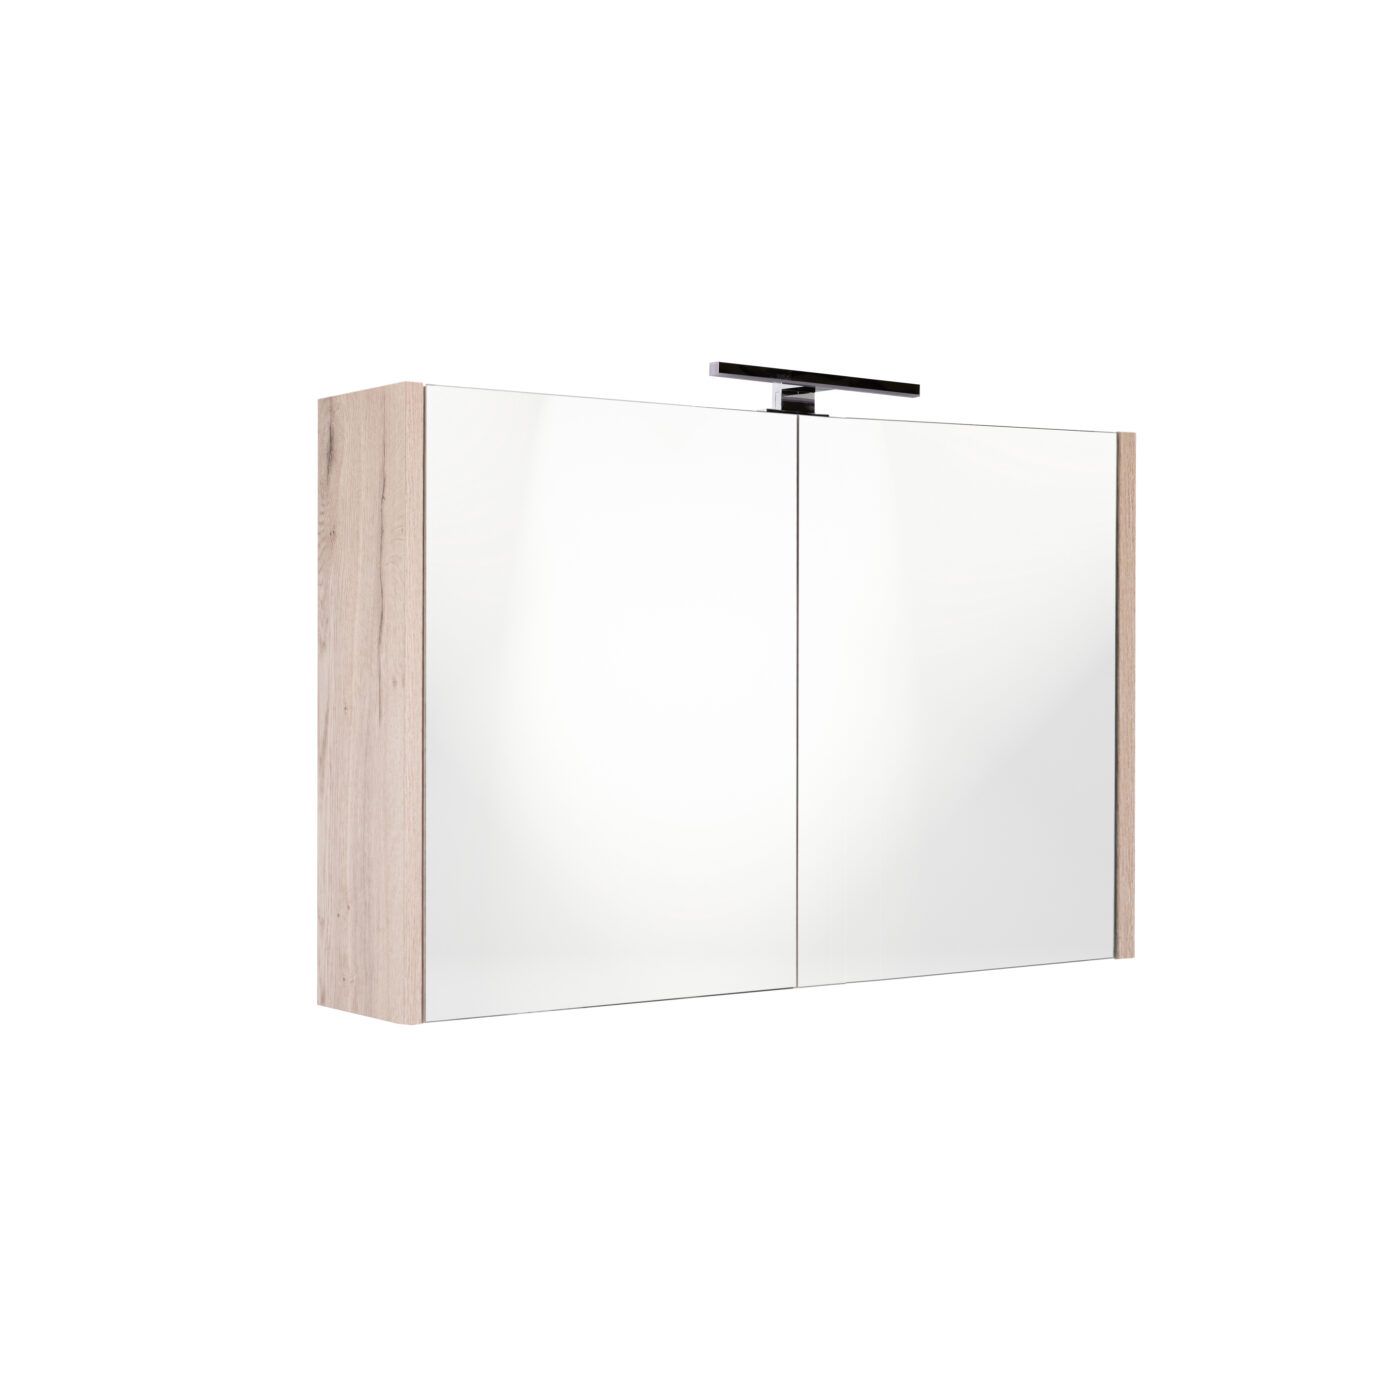 Best Design Happy Halifax spiegelkast met verlichting 100x60 halifax